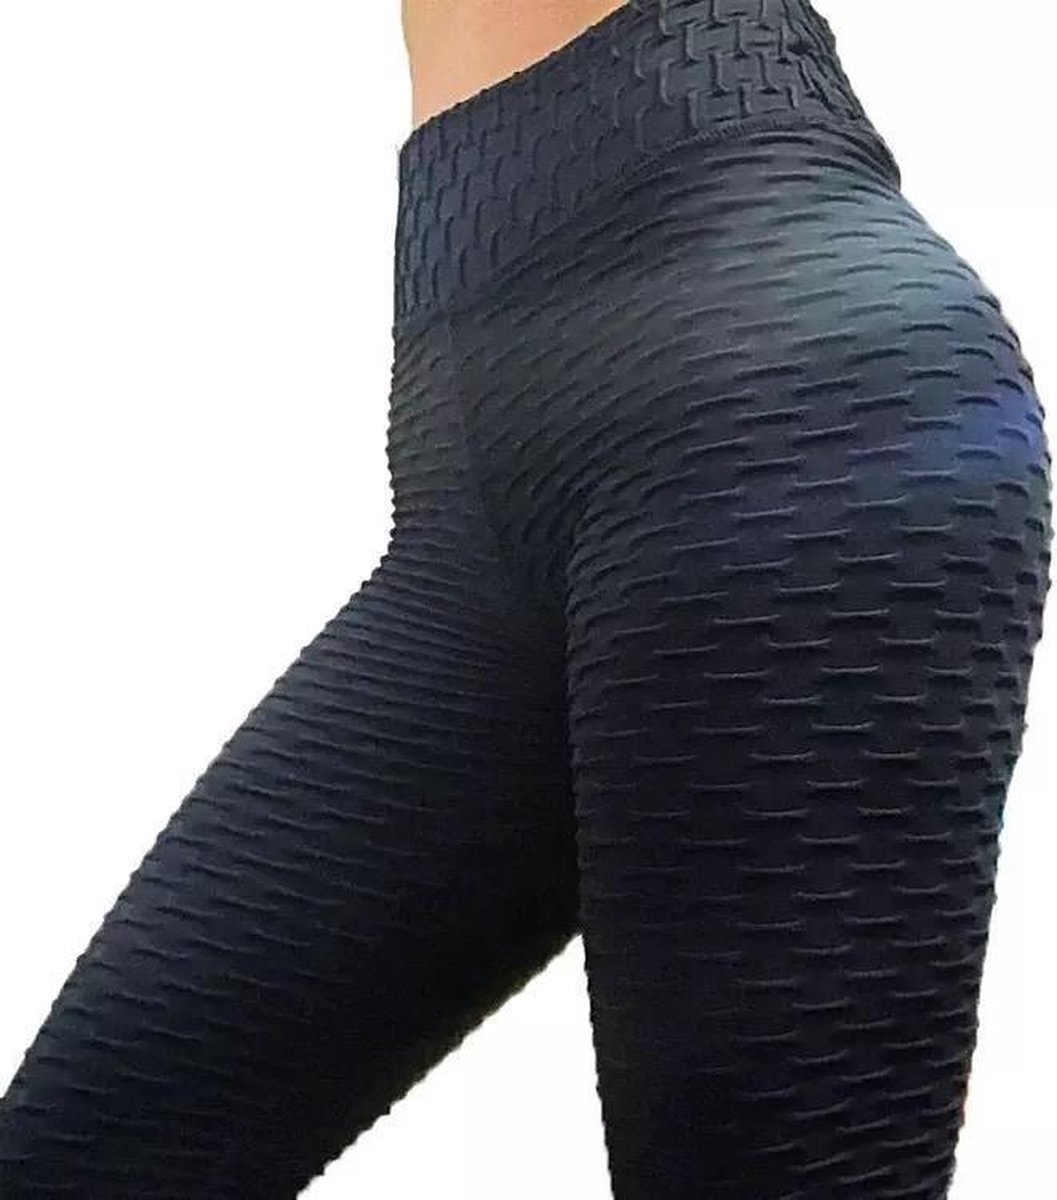 LOUZIR Sportlegging-Yoga -Scrunch Butt-High Waist- Absorberend- Anti Cellulite Legging-Gym Sports -Legging Fitness Wear-Zwart- maat L